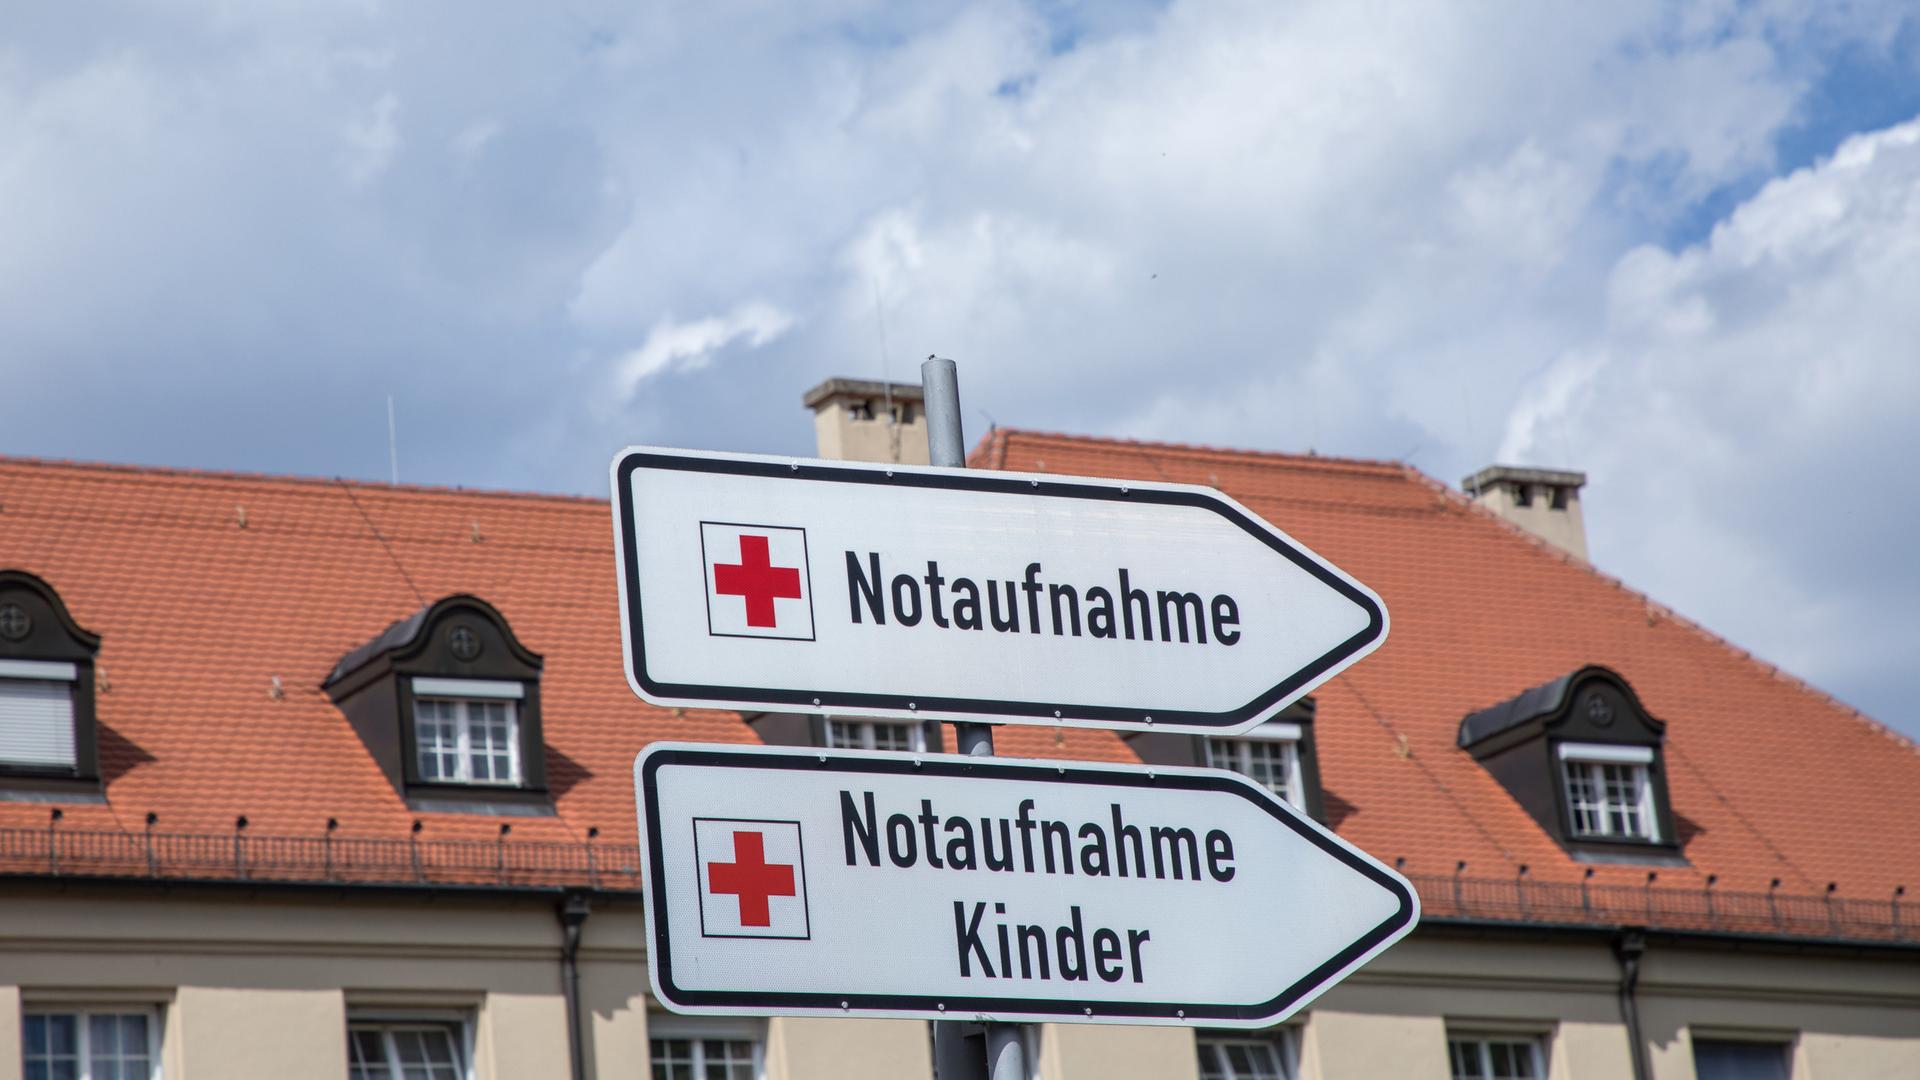 Blick auf die Klinik Schwabing in München mit Hinweistafeln zur Notaufnahme und Notaufnahme für Kinder.